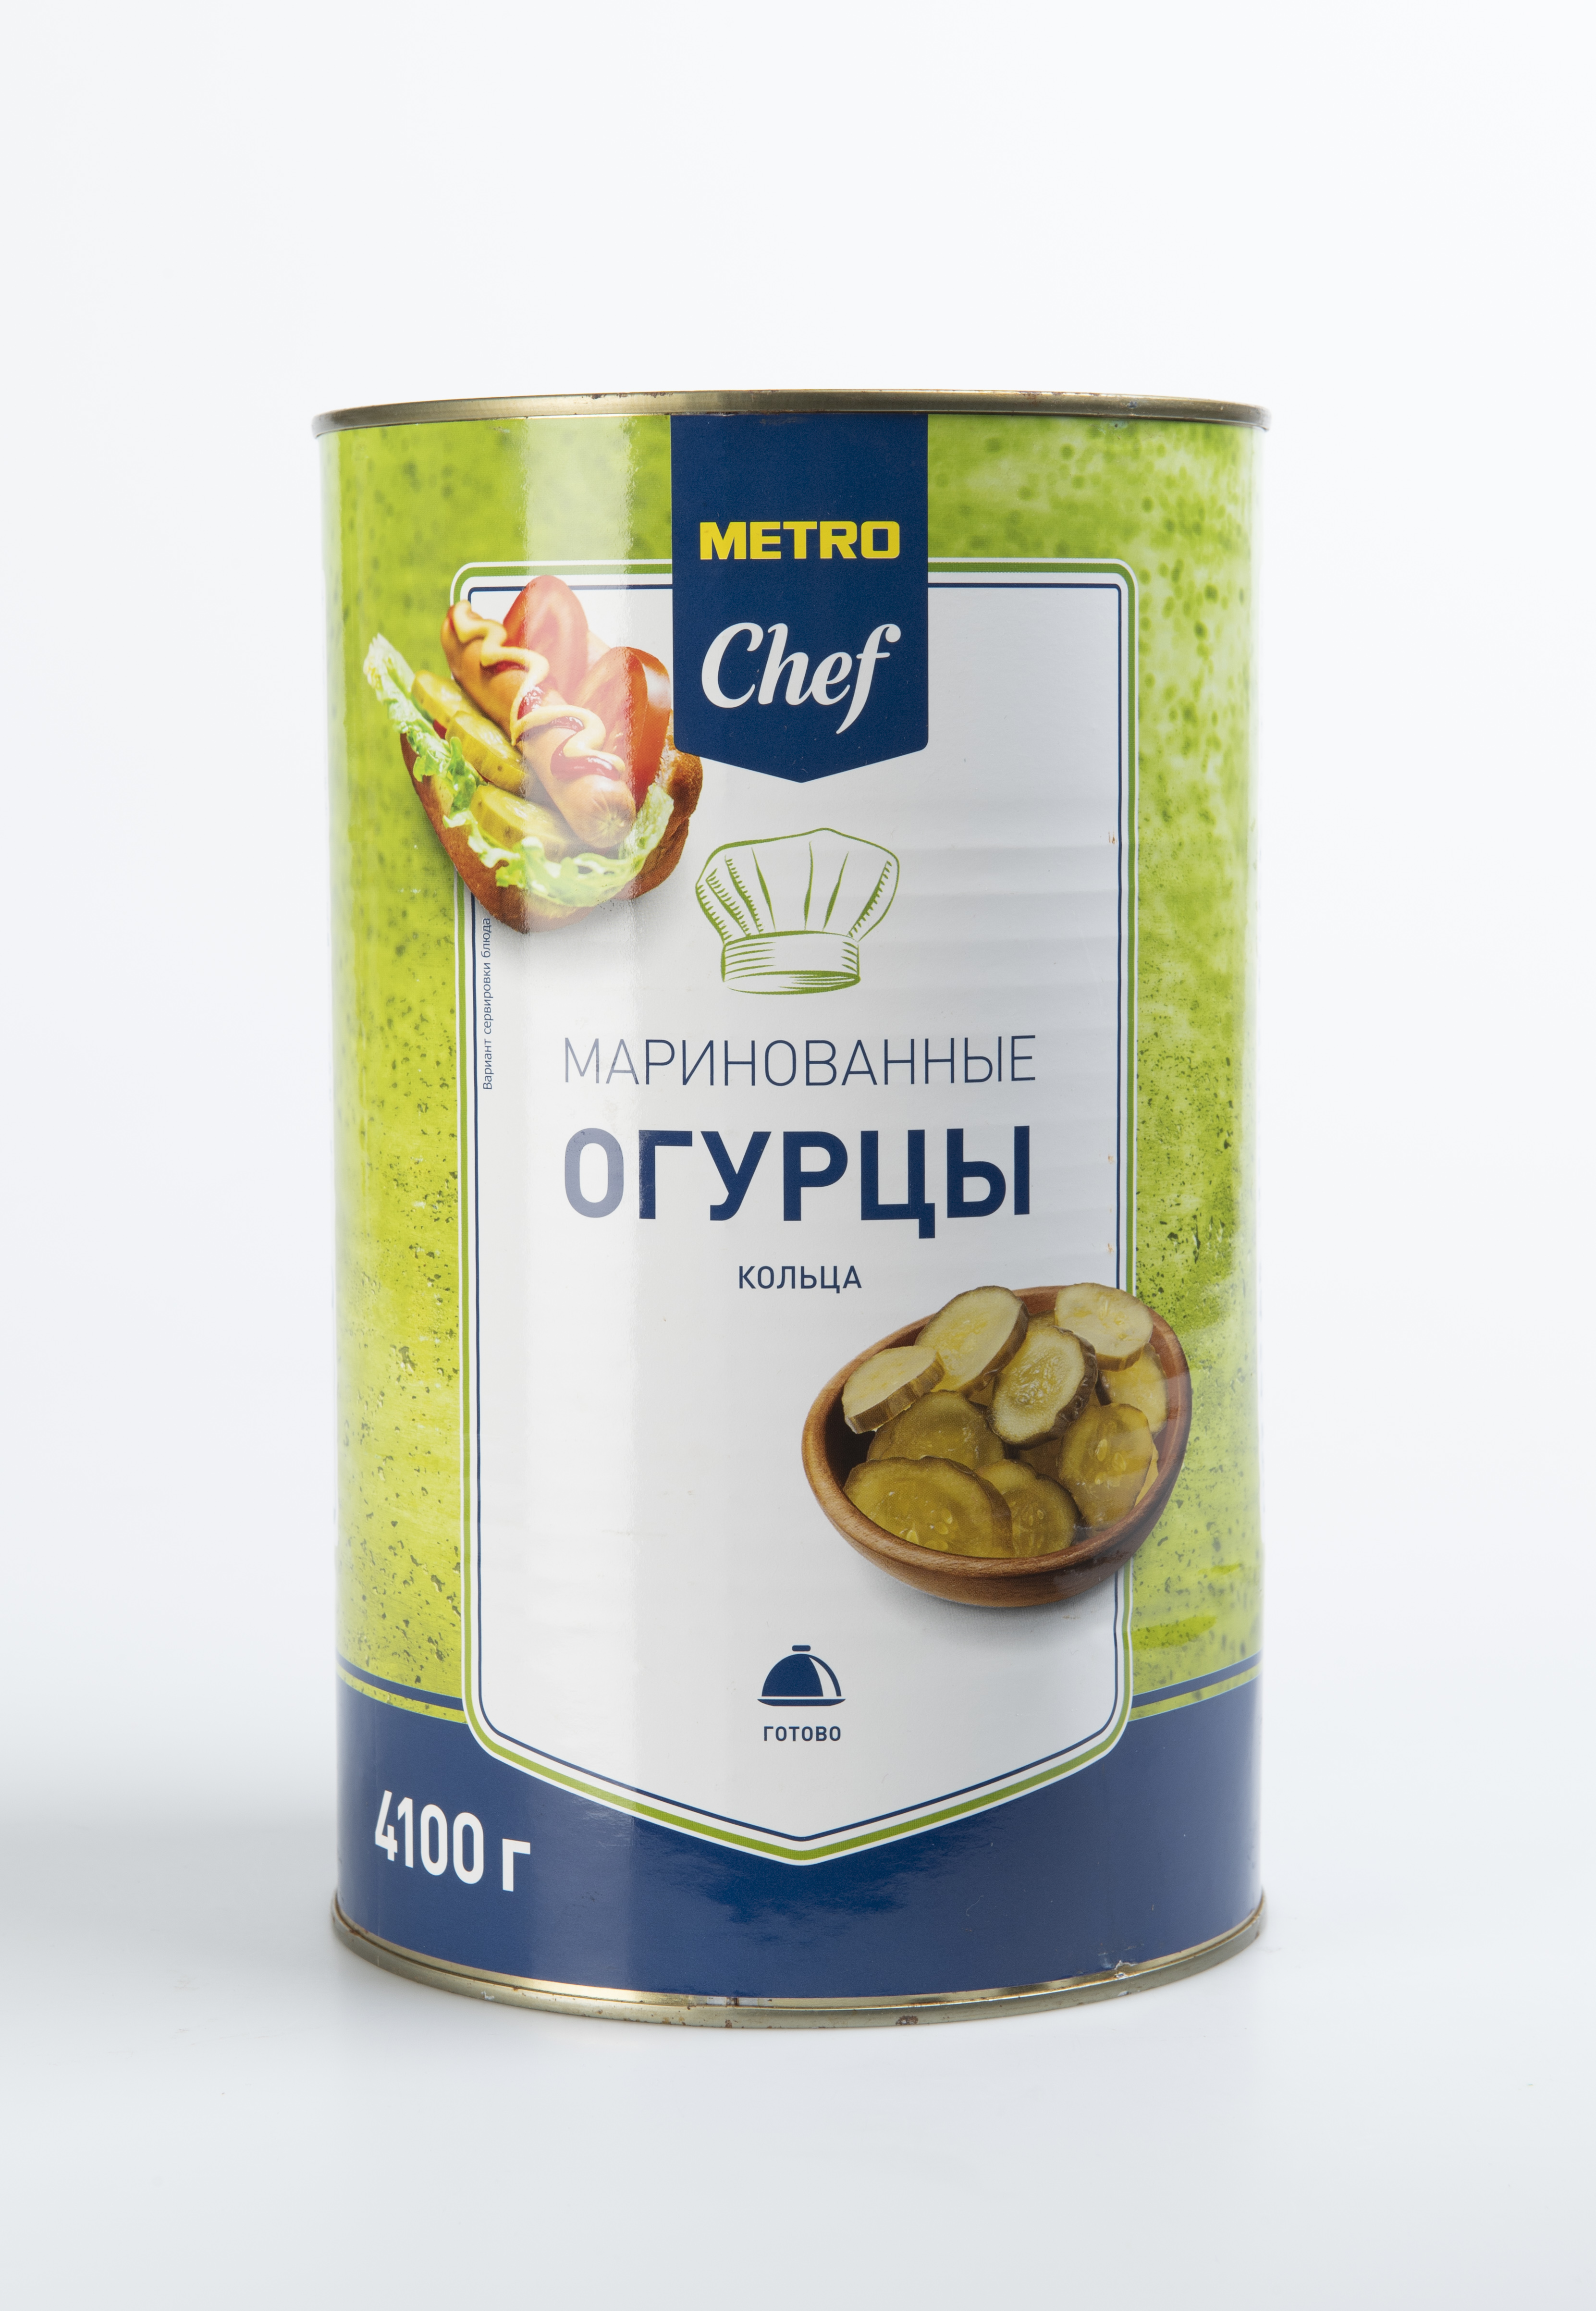 Огурцы Metro Chef маринованные 4,1 кг